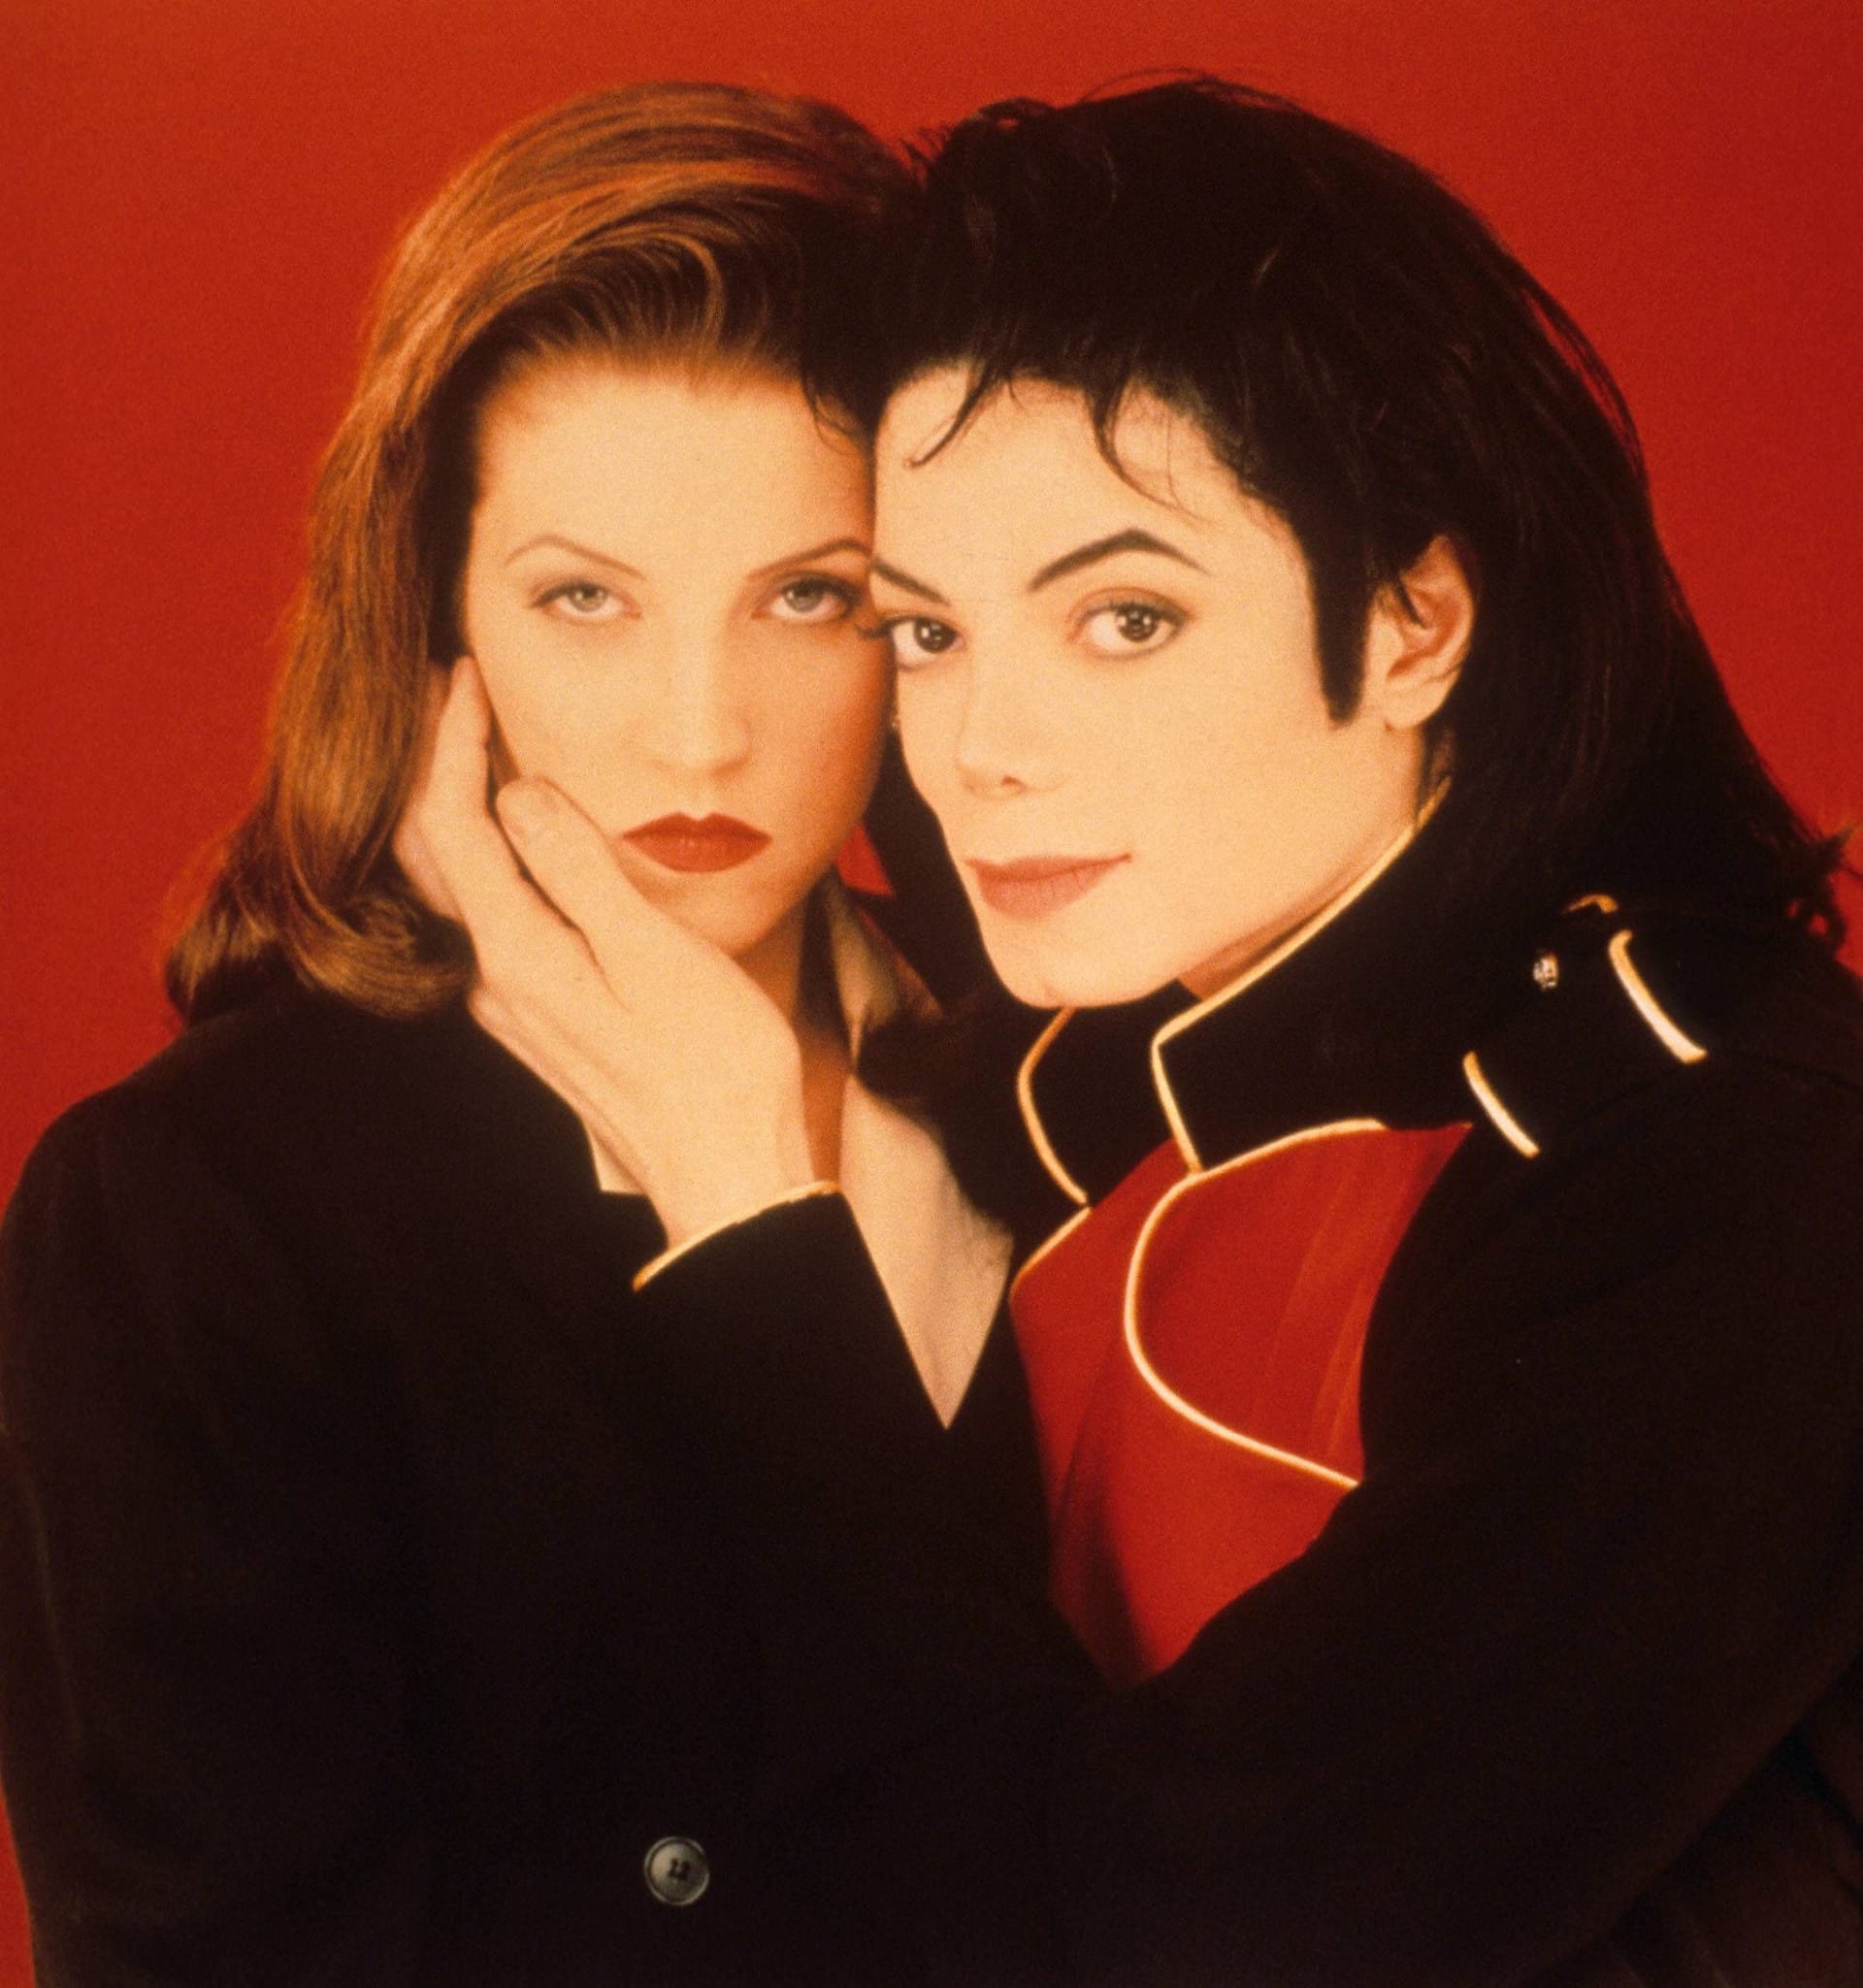 1994 heiratet Lisa Marie Presley den "King of Pop" Michael Jackson. Doch schon nach eineinhalb Jahren ist die Beziehung wieder vorbei.